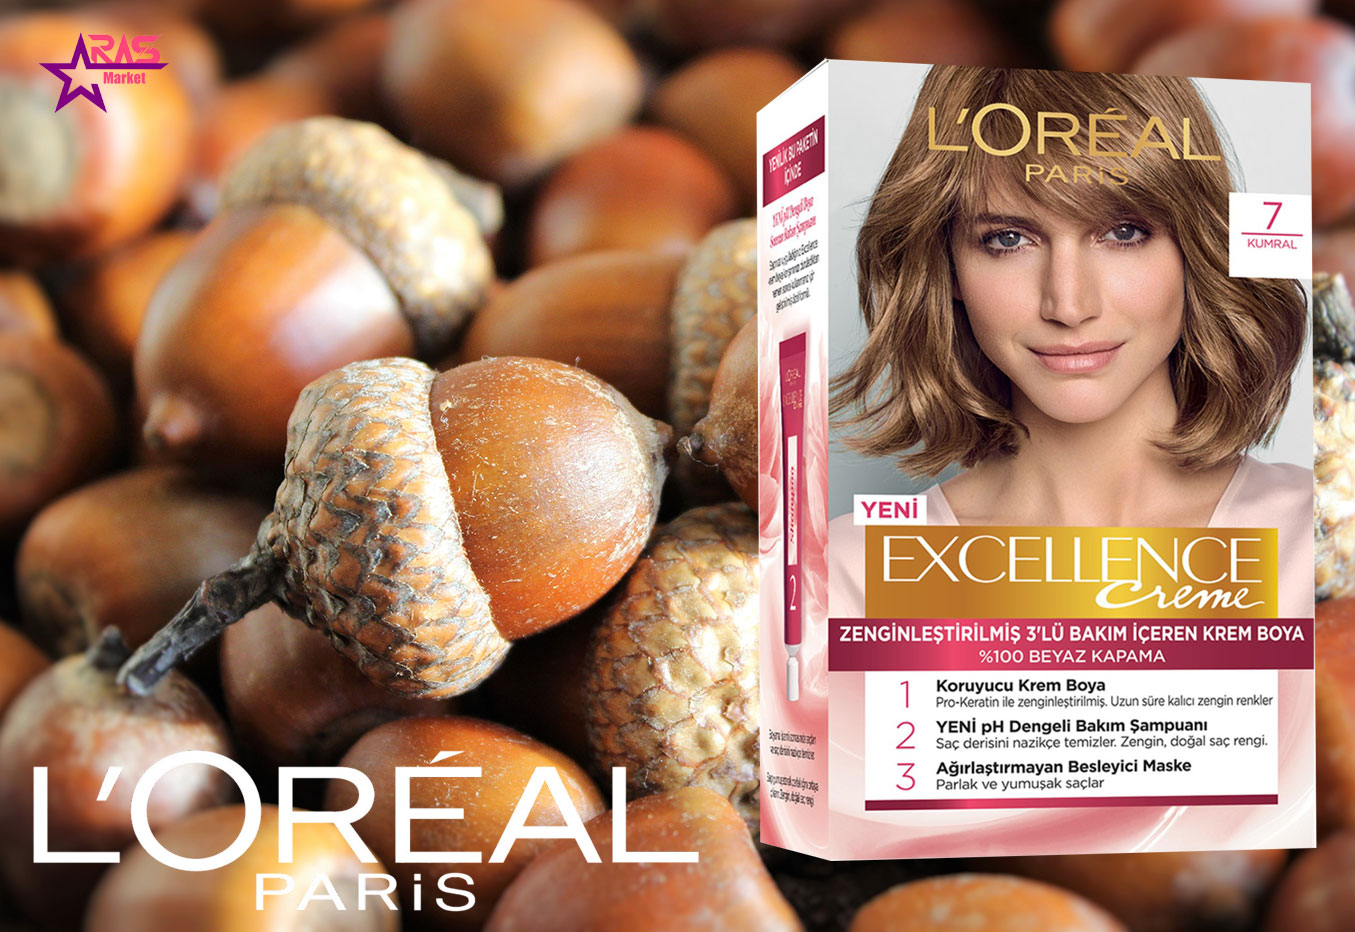 کیت رنگ مو لورآل سری Excellence شماره 7 ، خرید اینترنتی محصولات شوینده و بهداشتی ، بهداشت بانوان